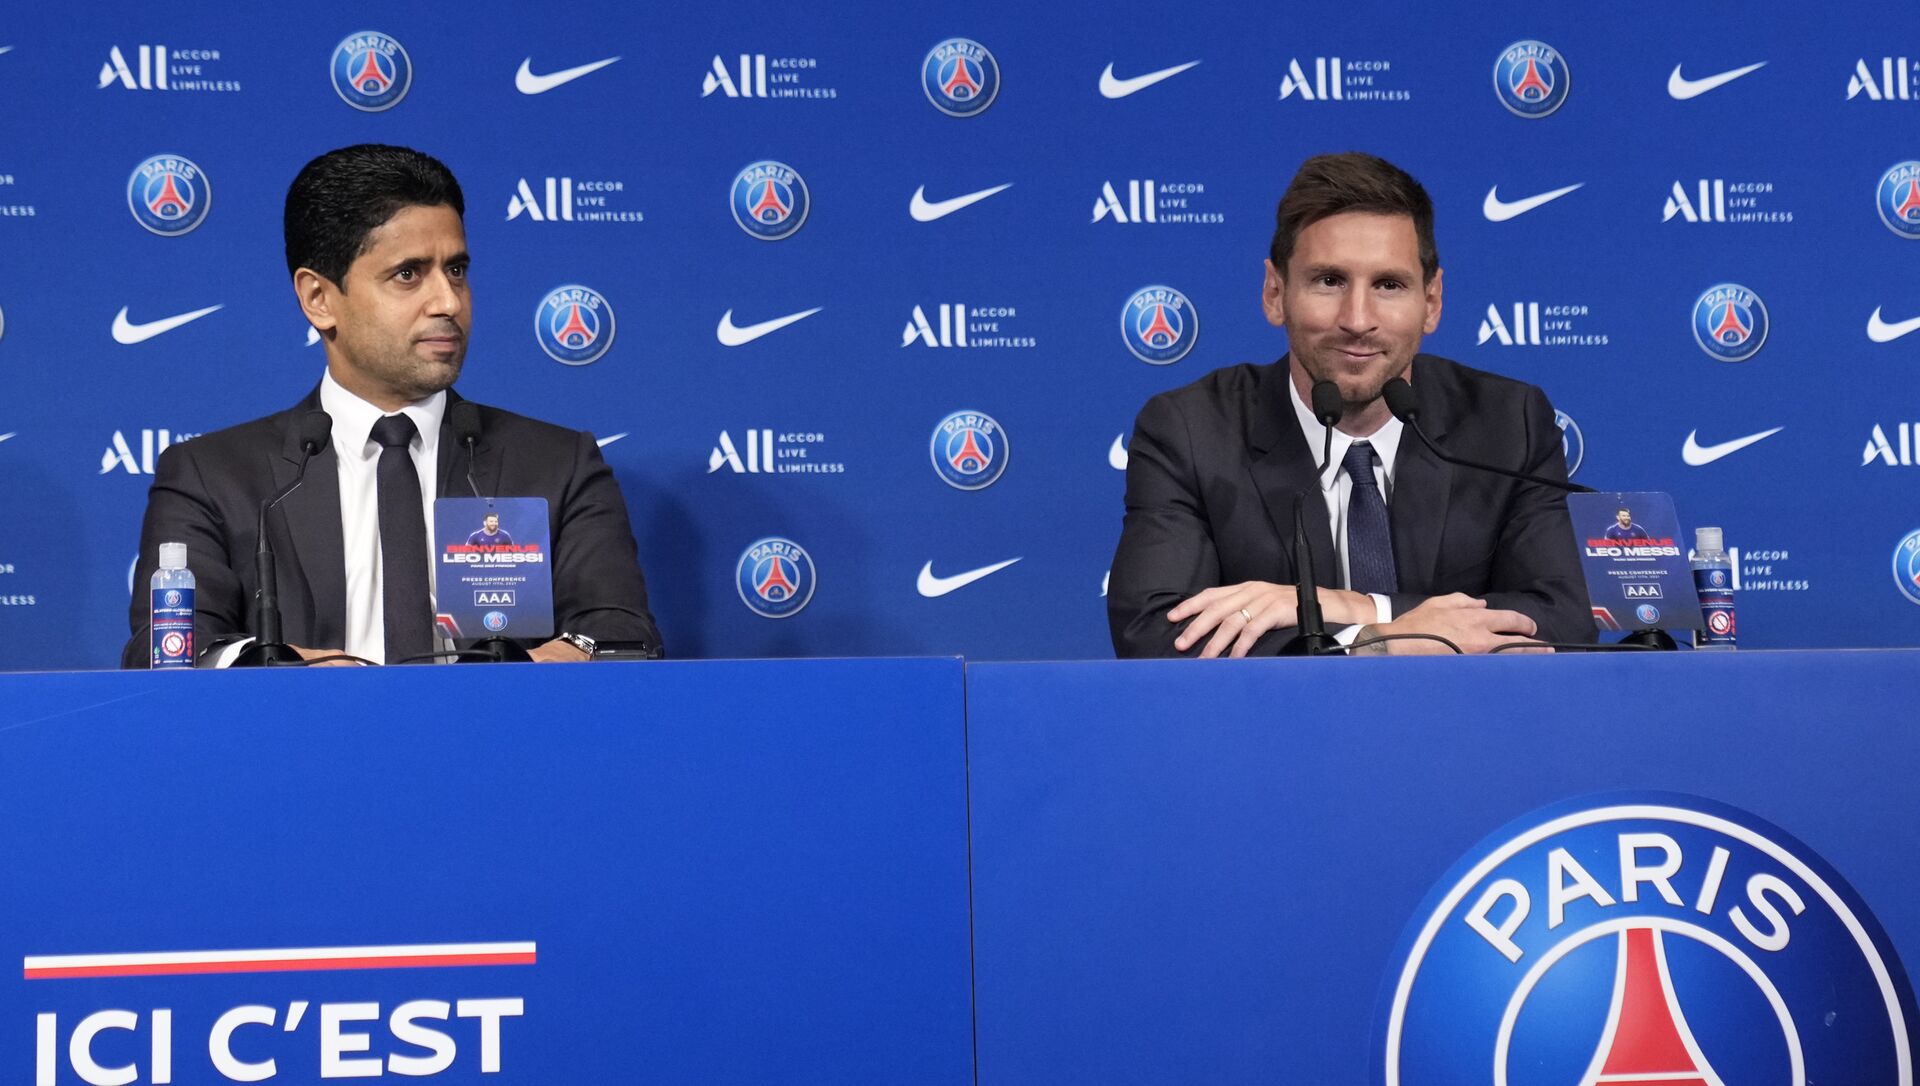 Lionel Messi, phải, và chủ tịch PSG, Nasser Al-Al-Khelaifi tham dự cuộc họp báo vào thứ Tư, ngày 11 tháng 8 năm 2021 tại sân vận động Parc des Princes ở Paris. - Sputnik Việt Nam, 1920, 11.08.2021